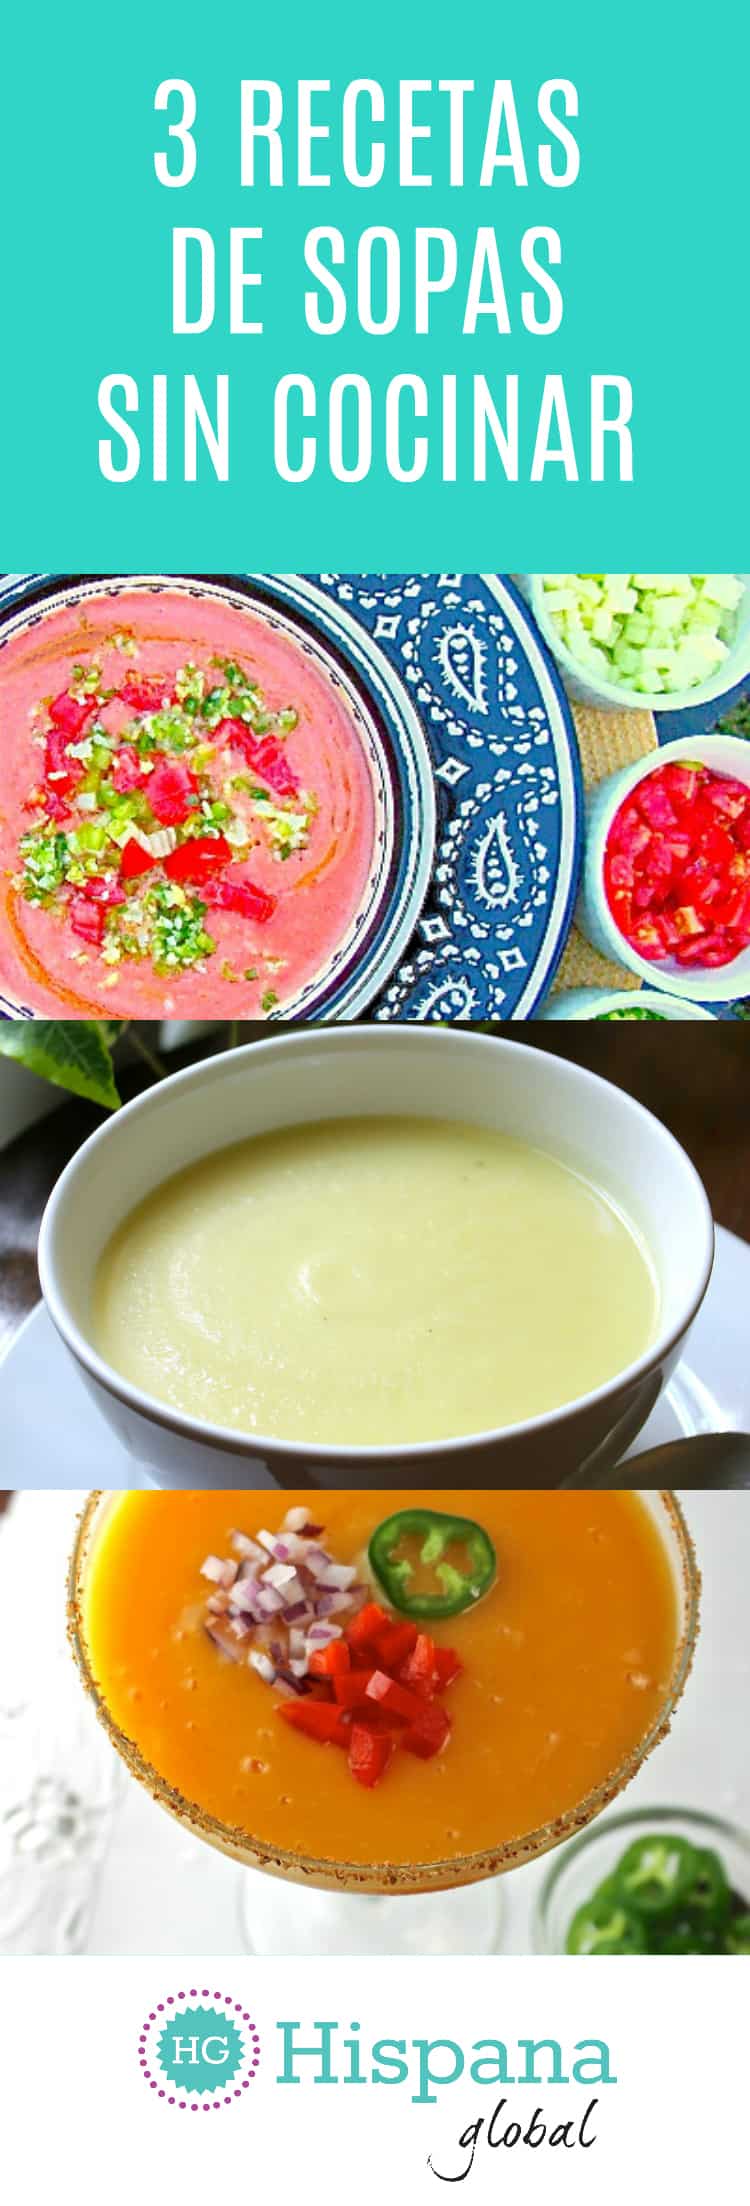 Recetas de sopas frías, sopas sin cocinar como gazpacho de mango, sopa de yogurt y pepino